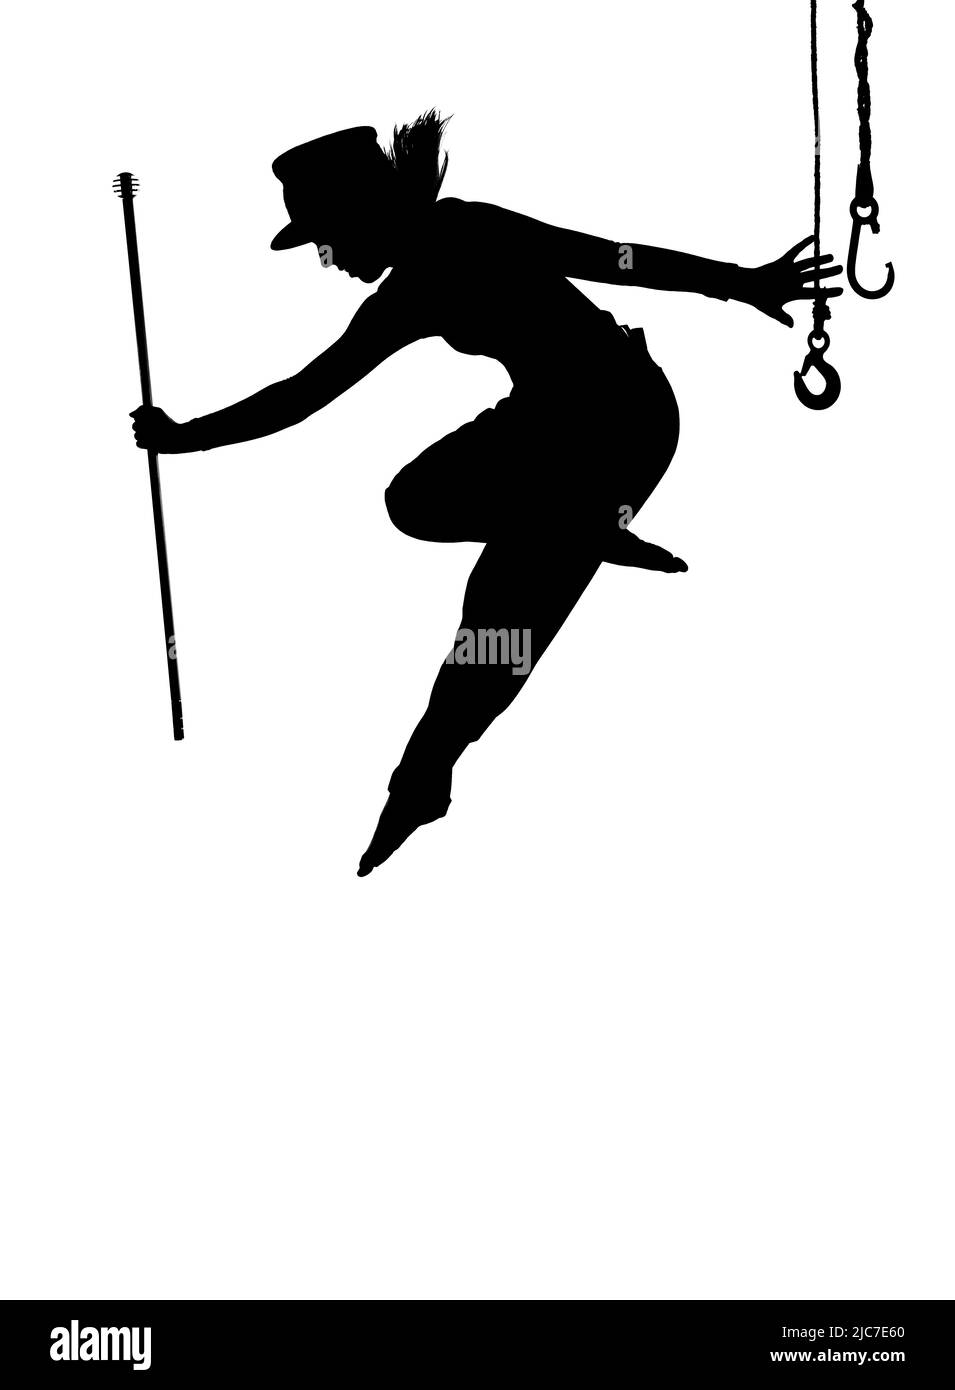 Una ballerina femminile è visto ballare sul palco. Vestita con abiti da uomo e con un cappello da uomo, si vede saltare a mezz'aria come una silhouette. Foto Stock